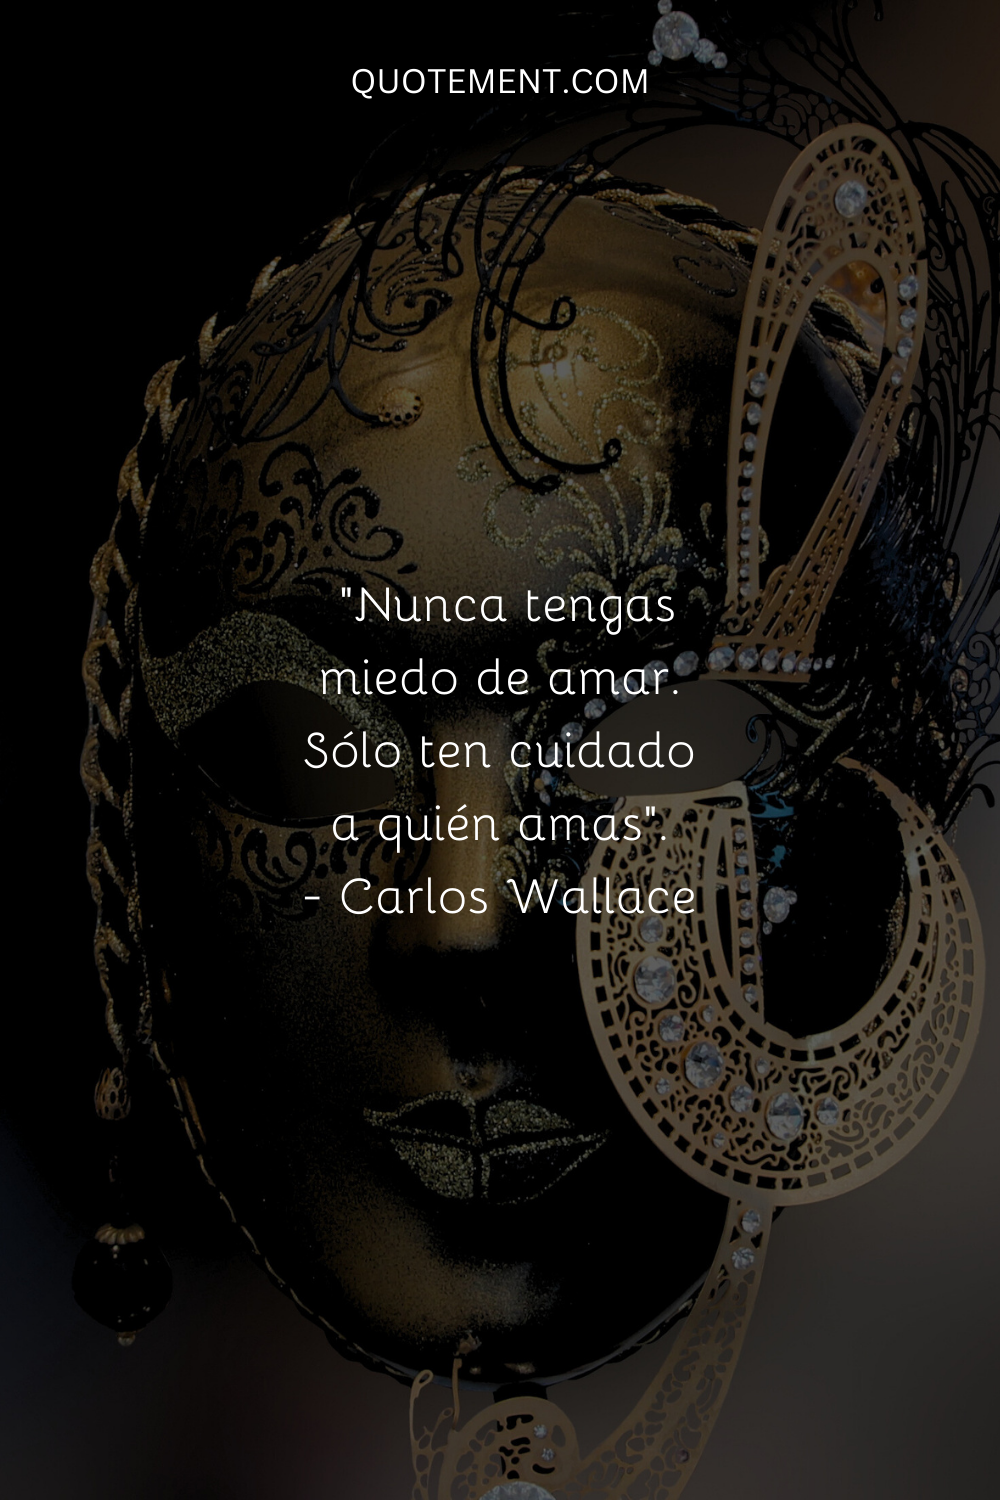 "Nunca tengas miedo de amar. Sólo ten cuidado a quién amas". - Carlos Wallace